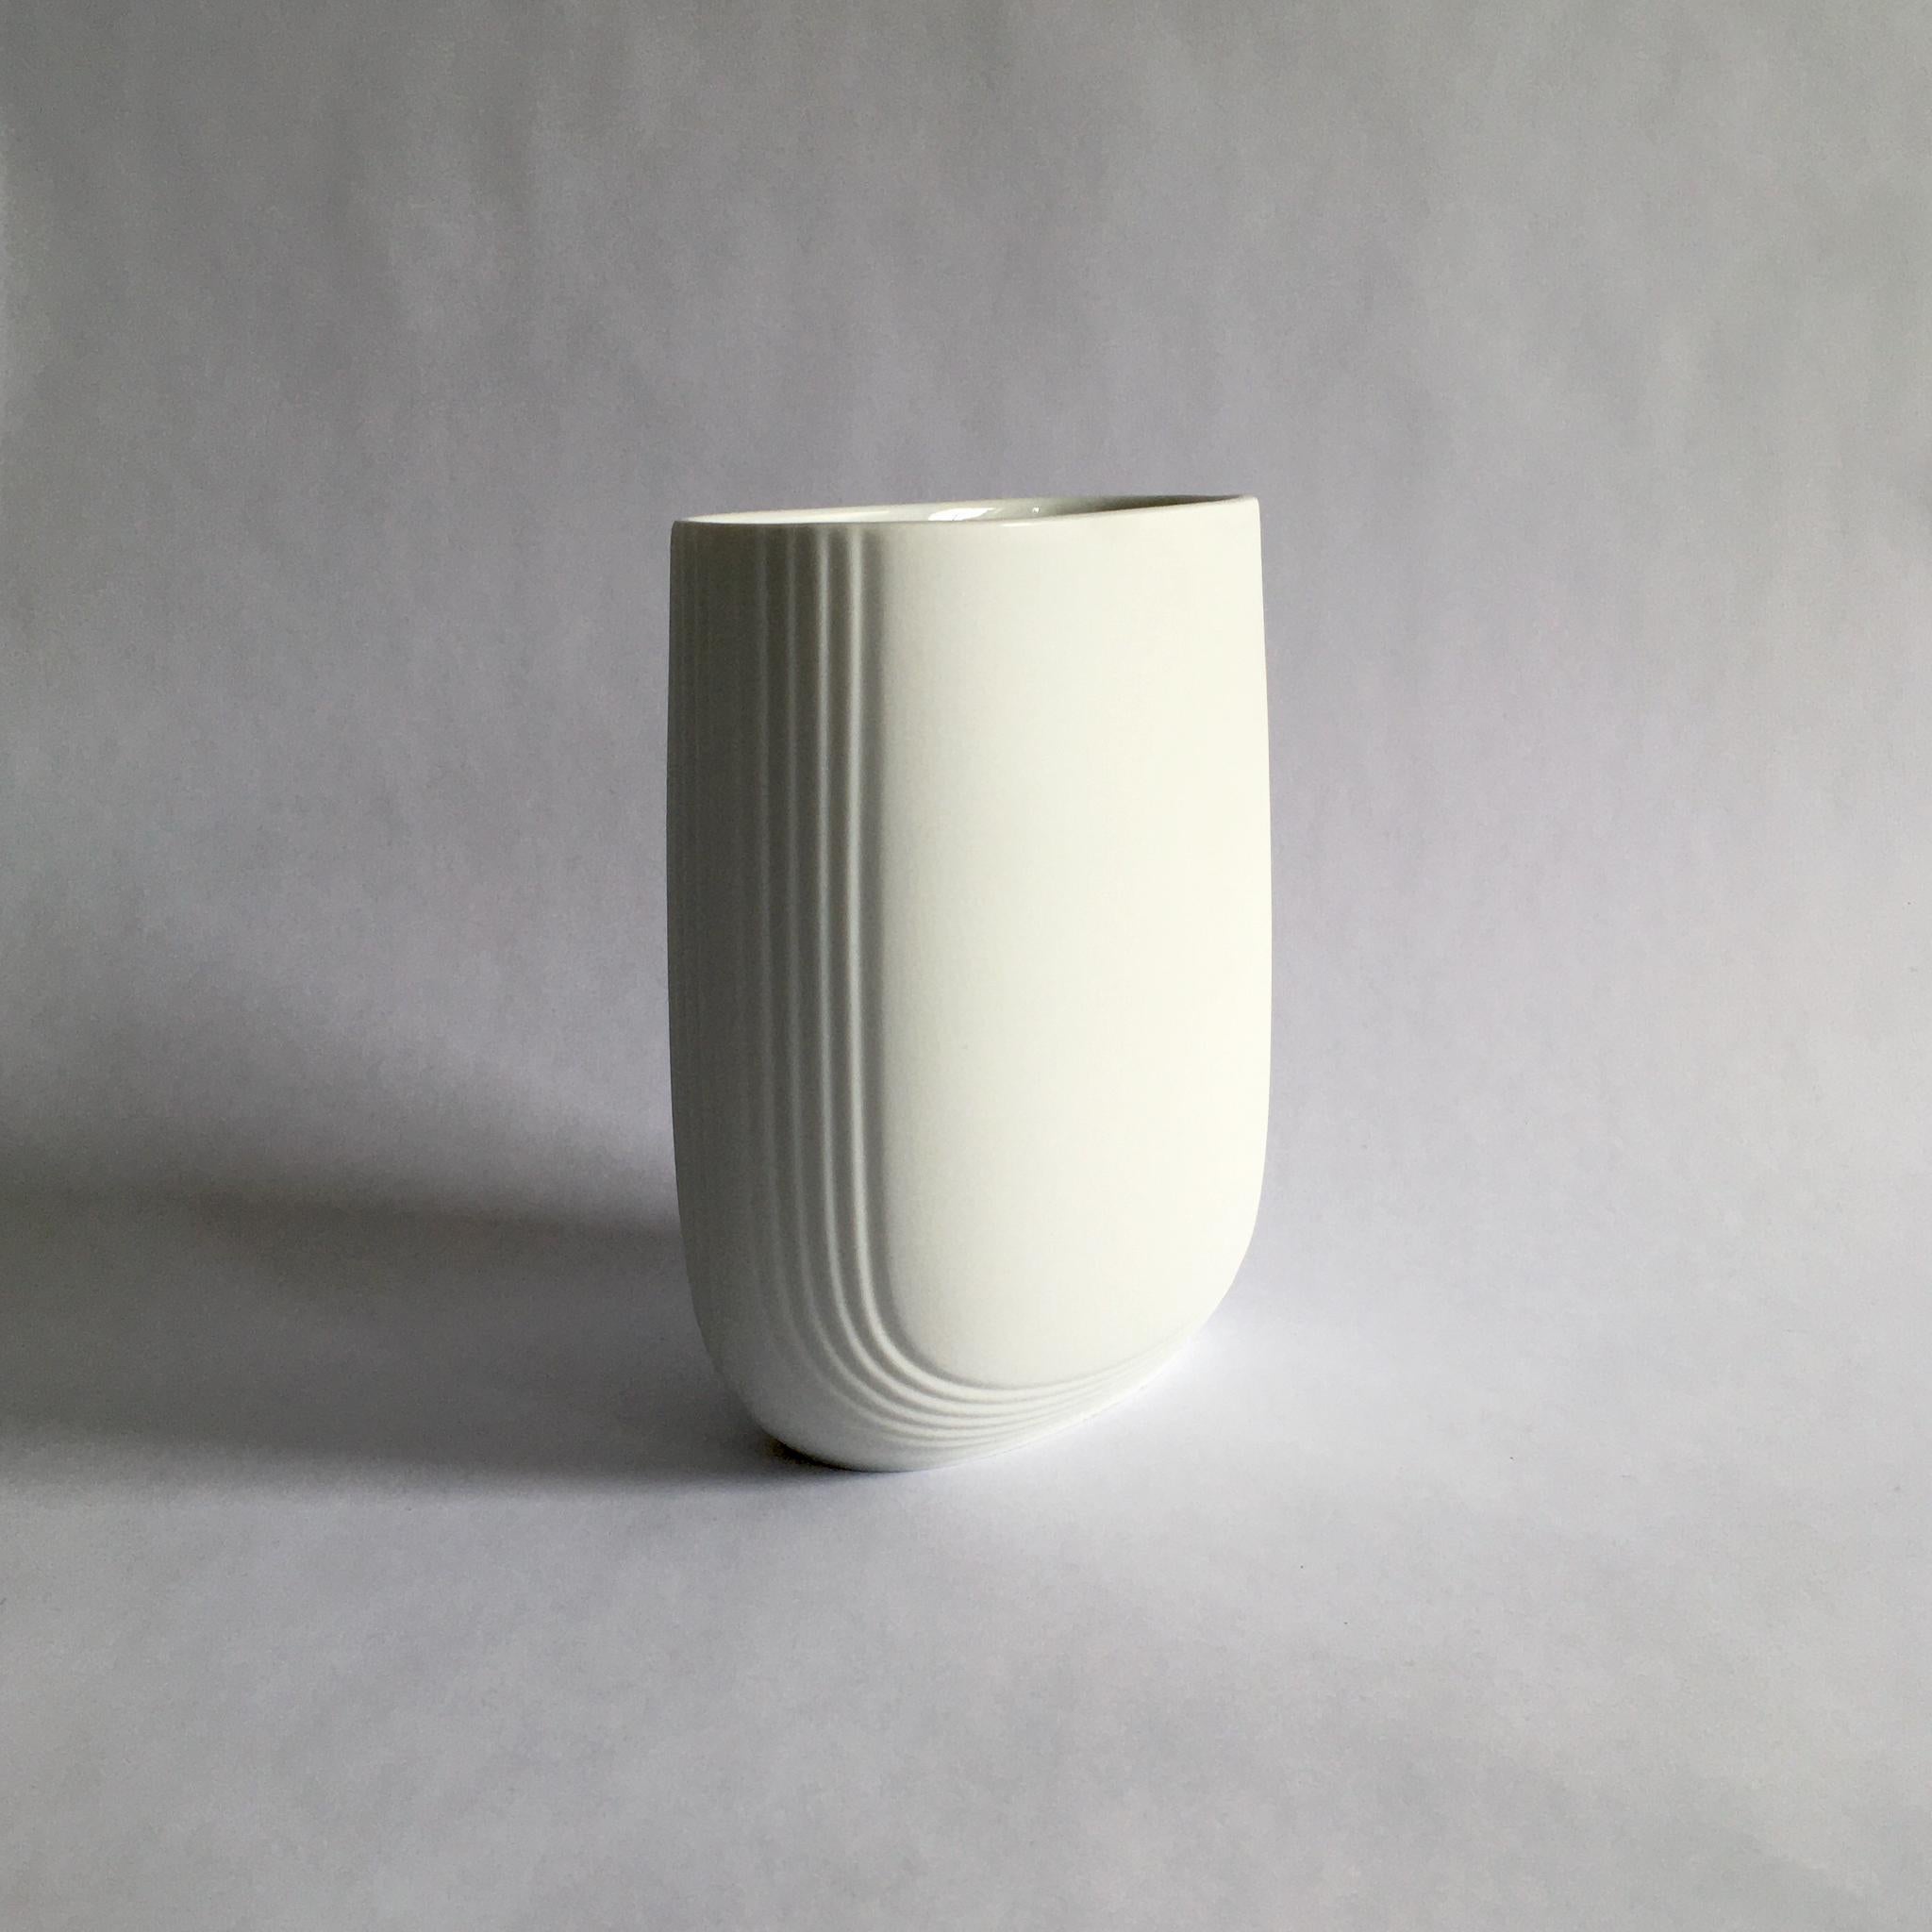 Vase en biscuit de porcelaine blanche Rosenthal Studio Line par Christa Hausler-Goltz. Belle forme oblongue arrondie, avec des détails linéaires.

Mesures :
H 5.5